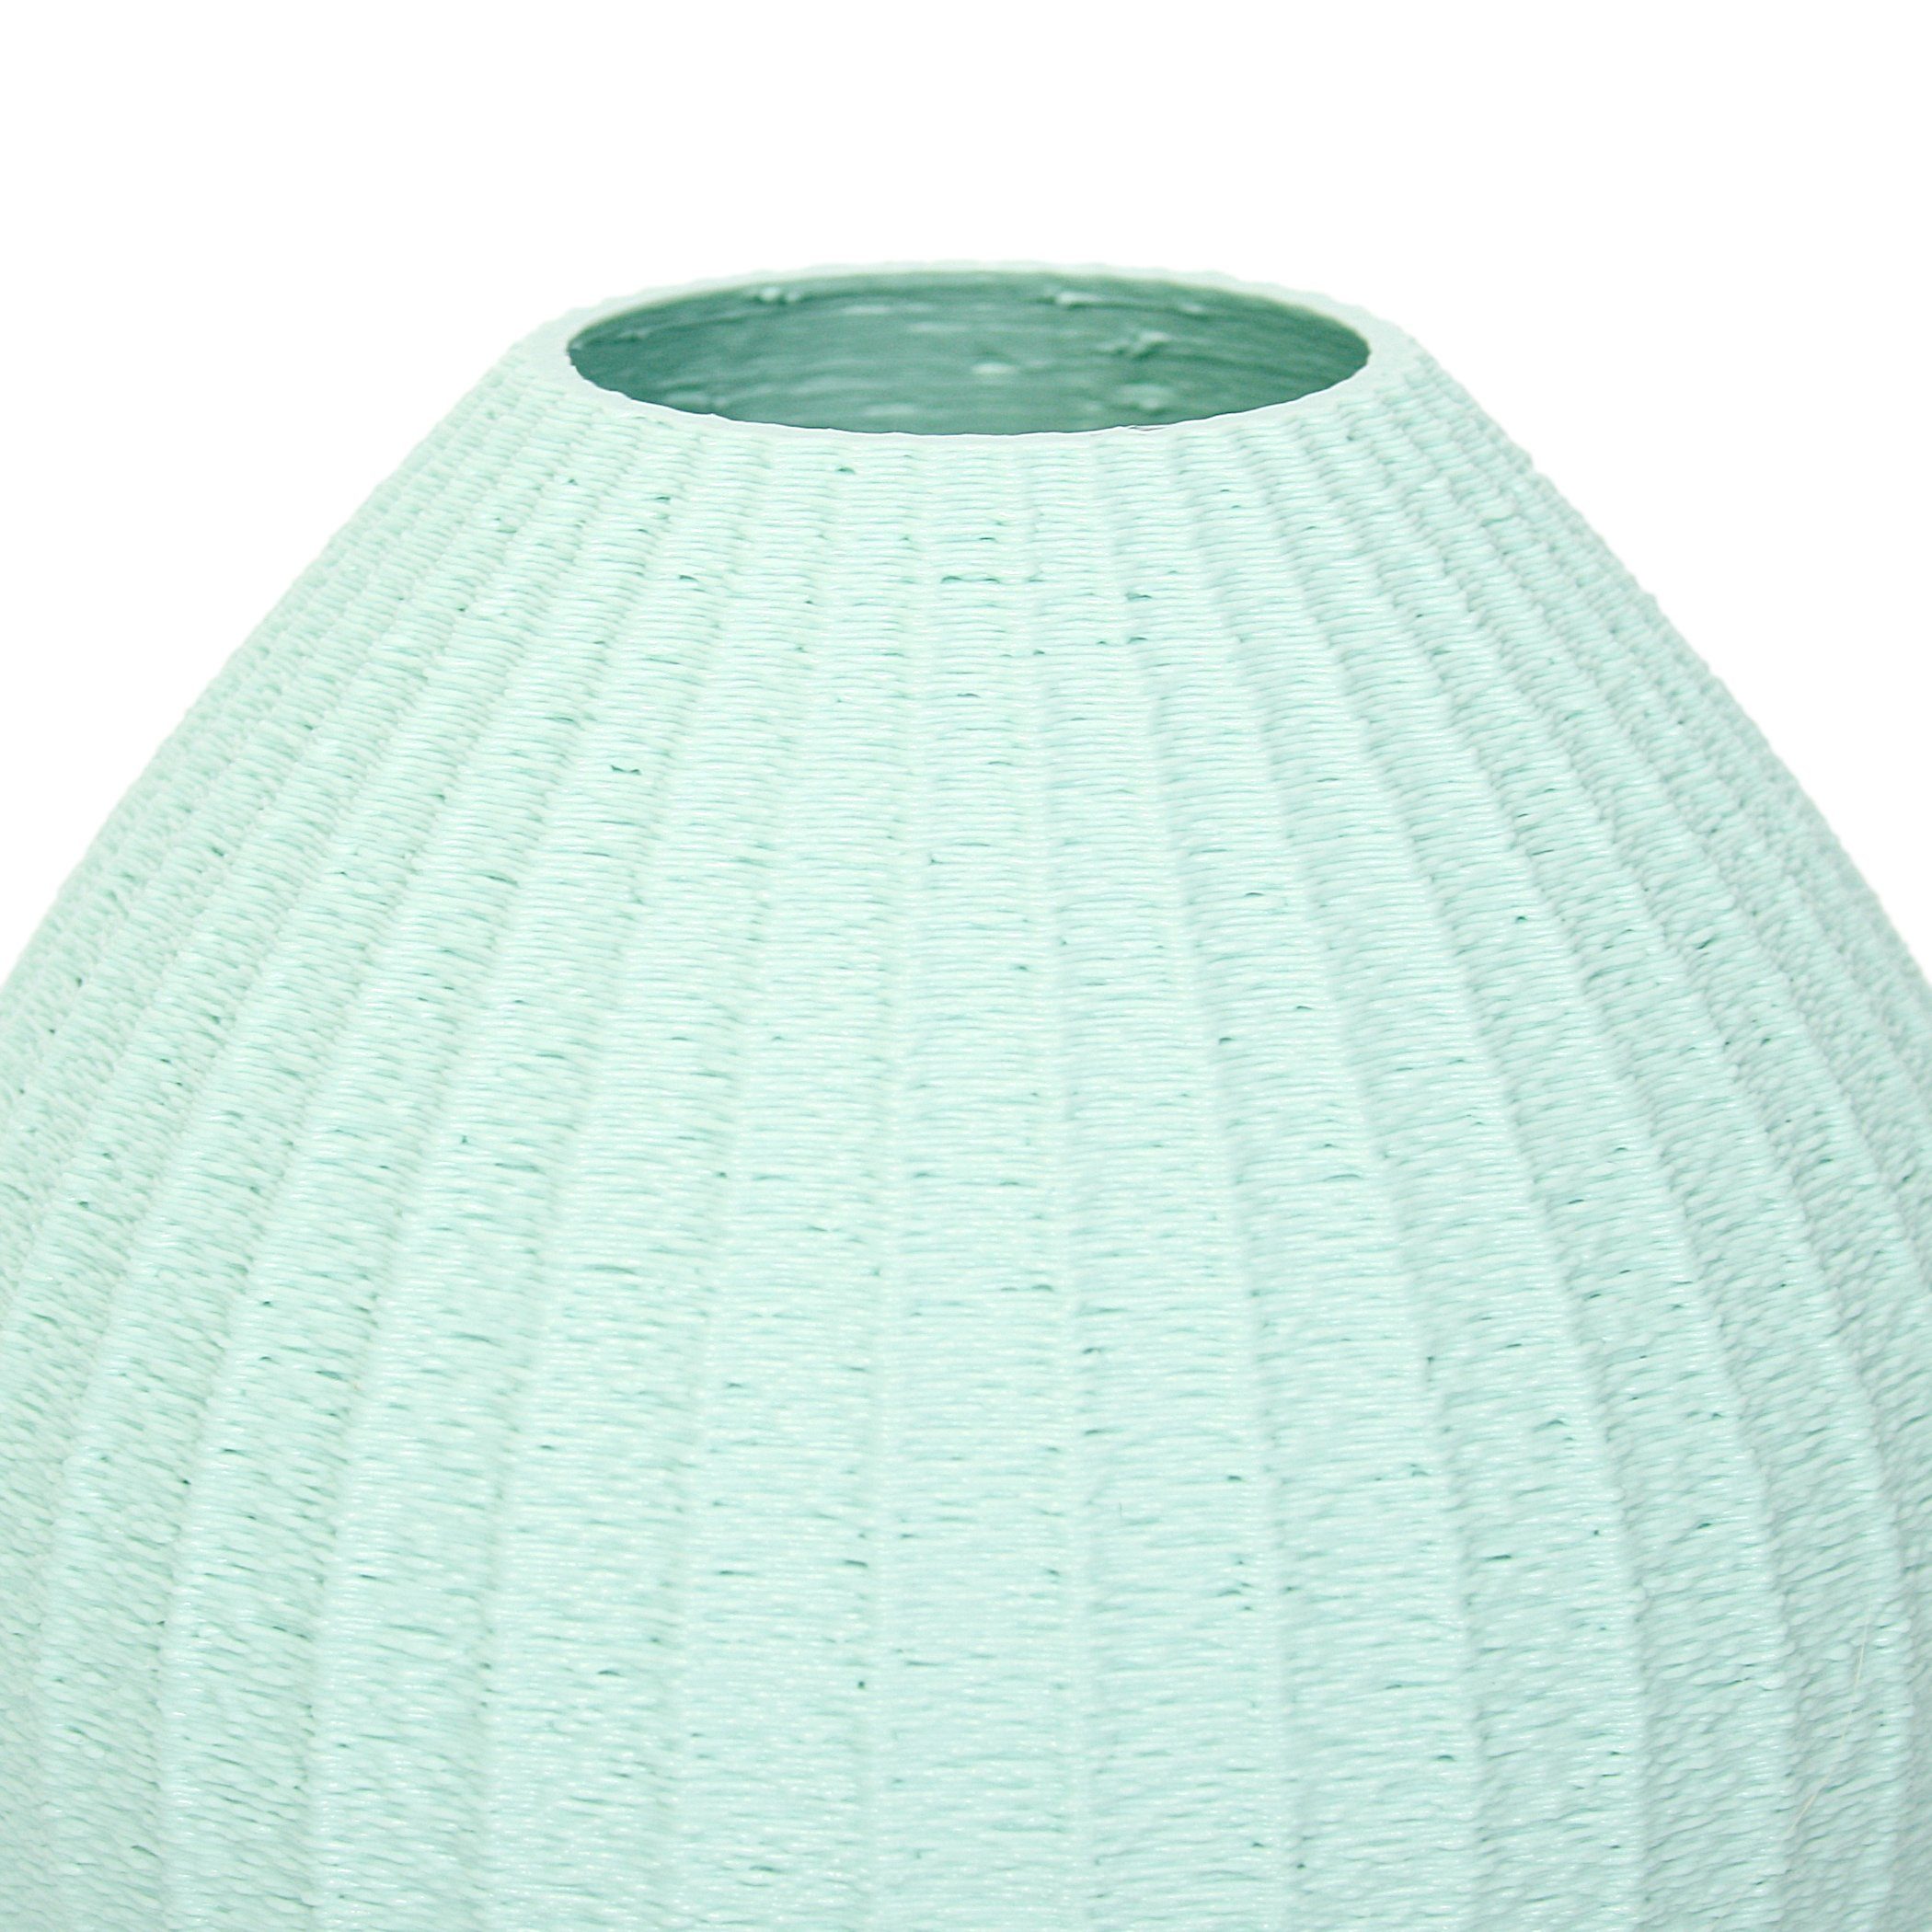 Vase aus Water – & Bio-Kunststoff, Designer Green nachwachsenden Dekovase Kreative bruchsicher Dekorative wasserdicht aus Blumenvase Feder Rohstoffen;